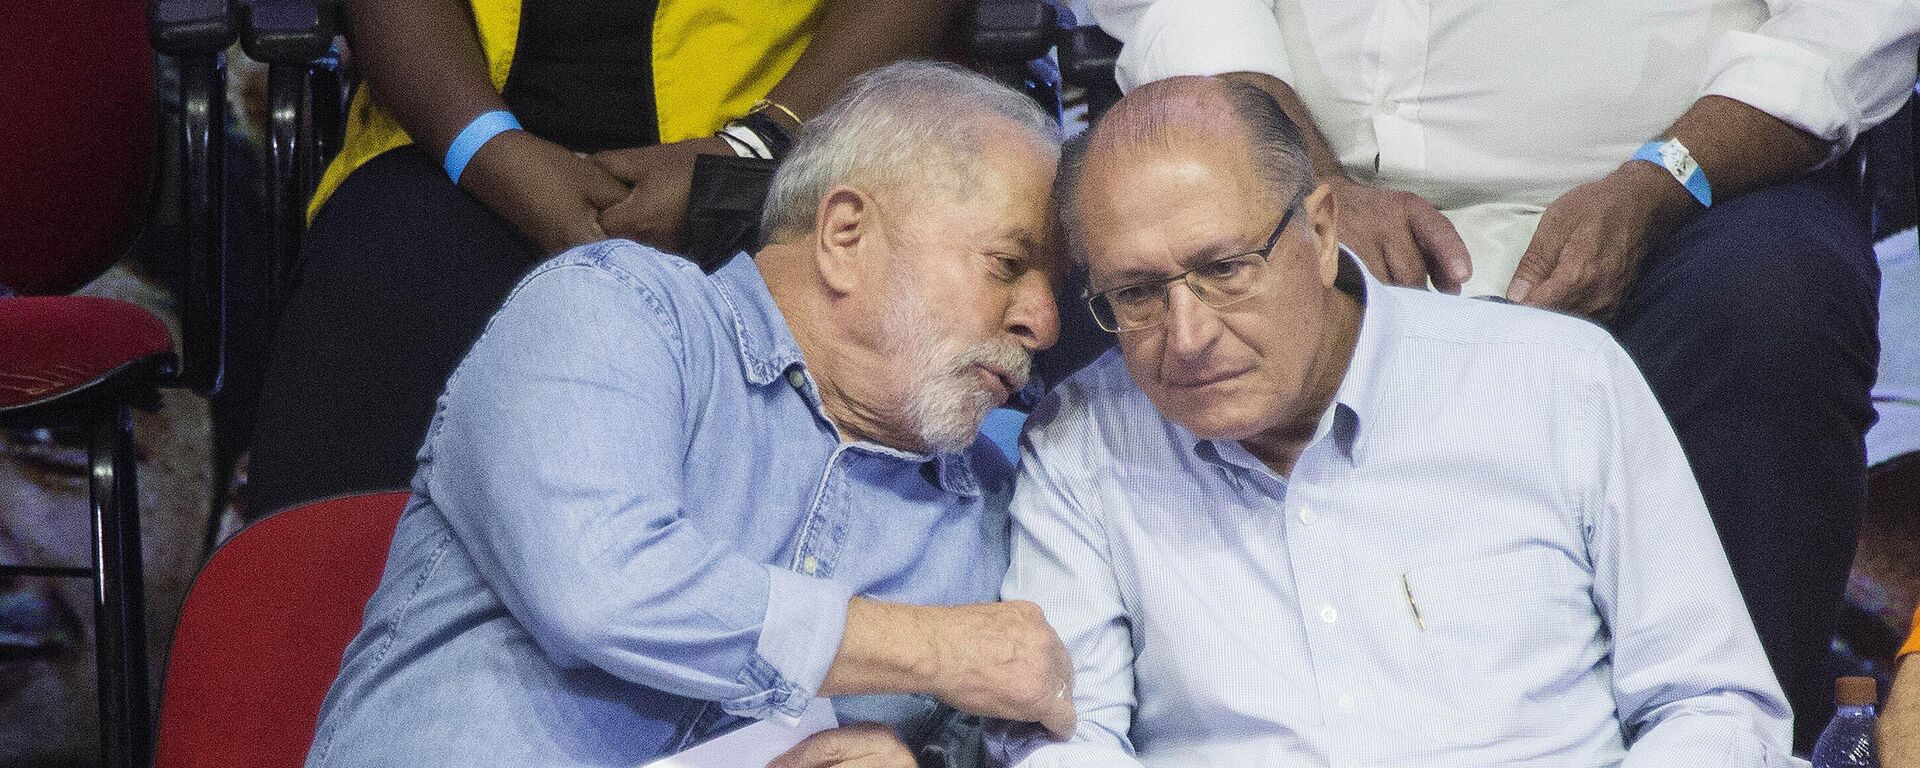 Os então candidatos à Presidência Luiz Inácio Lula da Silva (PT, à esquerda) e à Vice-Presidência Geraldo Alckmin (PSB) conversam durante encontro com sindicalistas em São Paulo, em 4 de abril de 2022 (foto de arquivo) - Sputnik Brasil, 1920, 10.11.2022